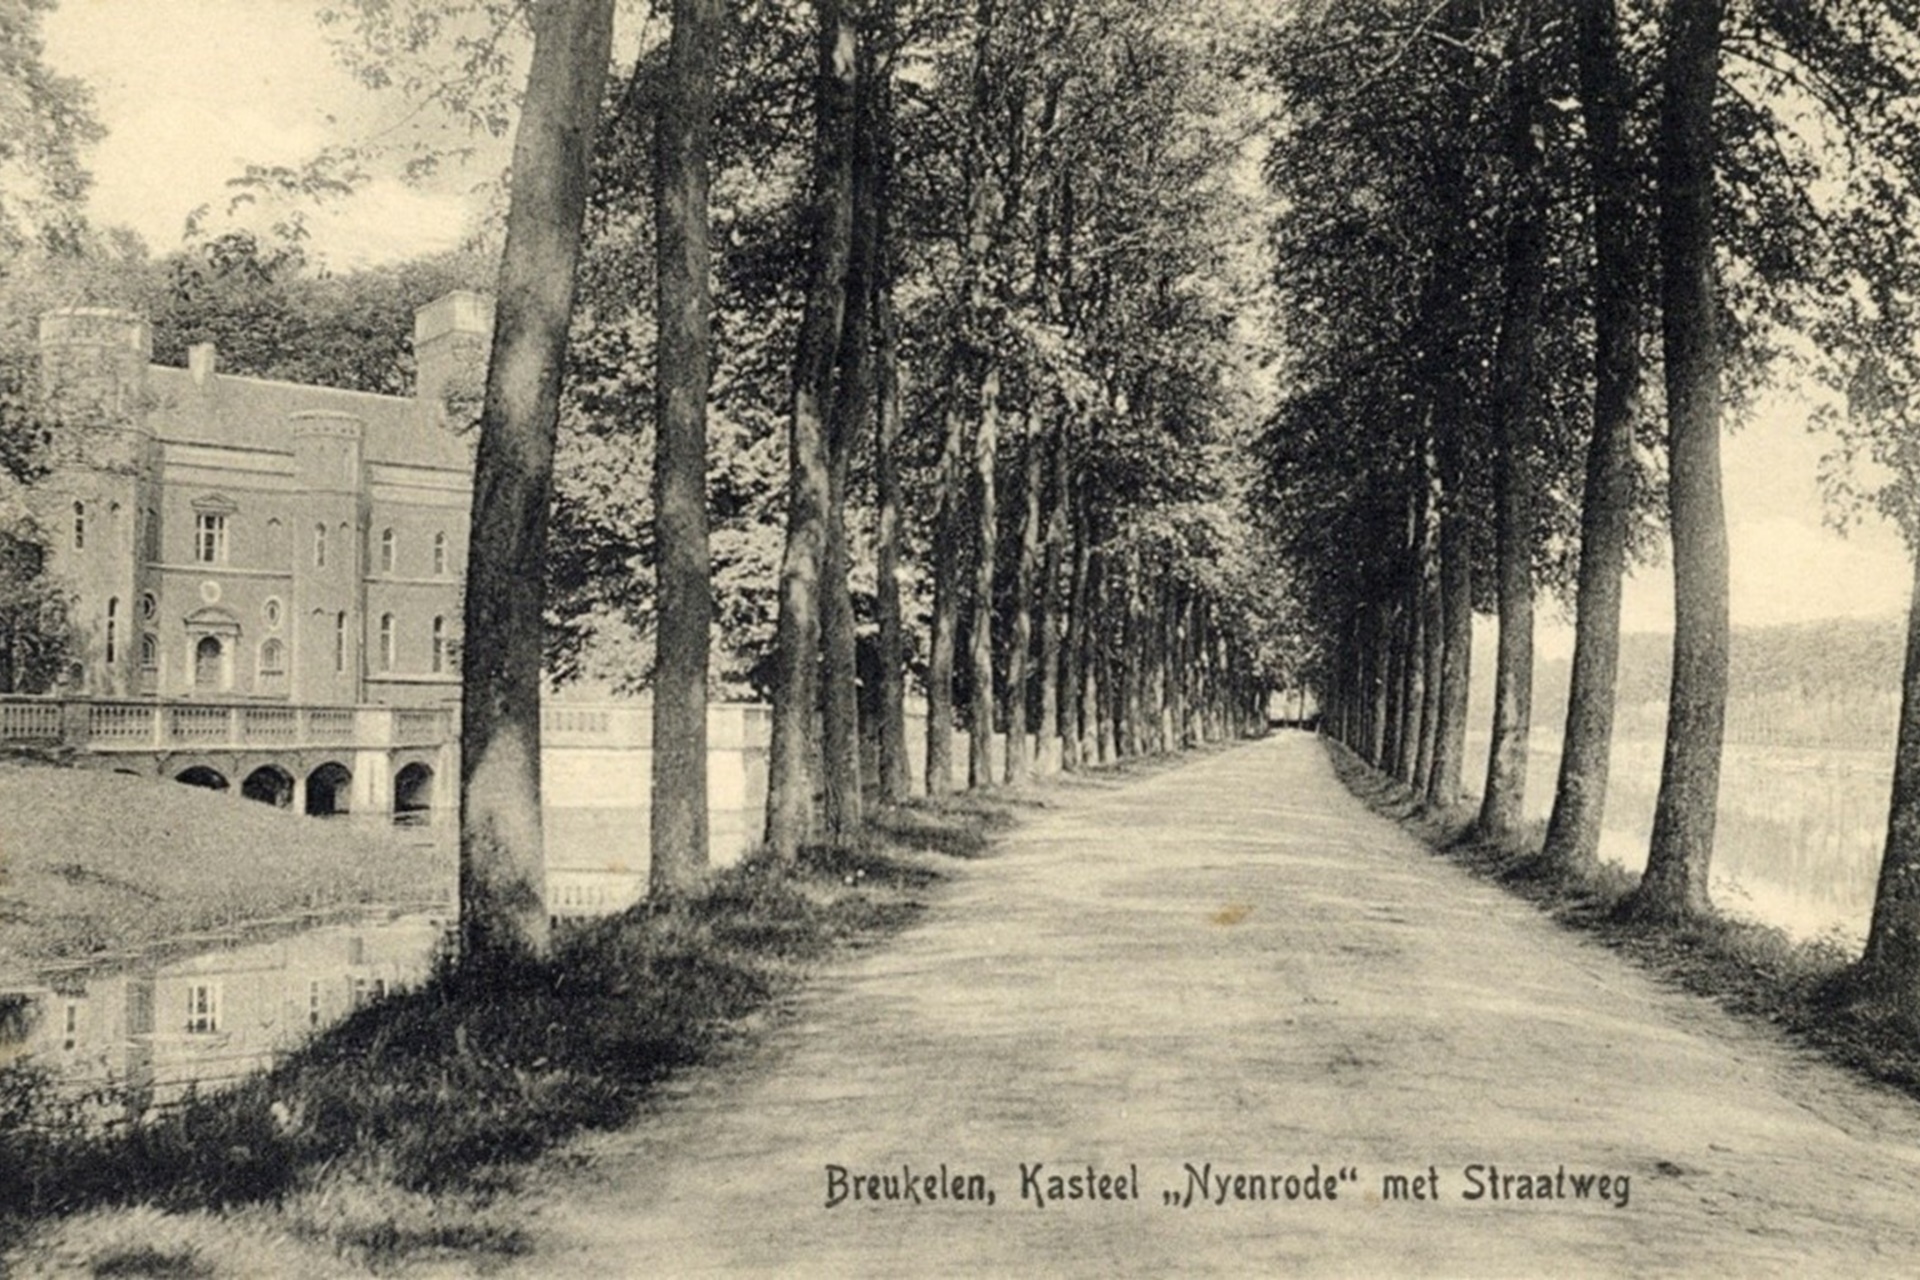 Nyenrode vanaf de Straatweg, 1905-1910. [Het Utrechts Archief, inv. 8666]